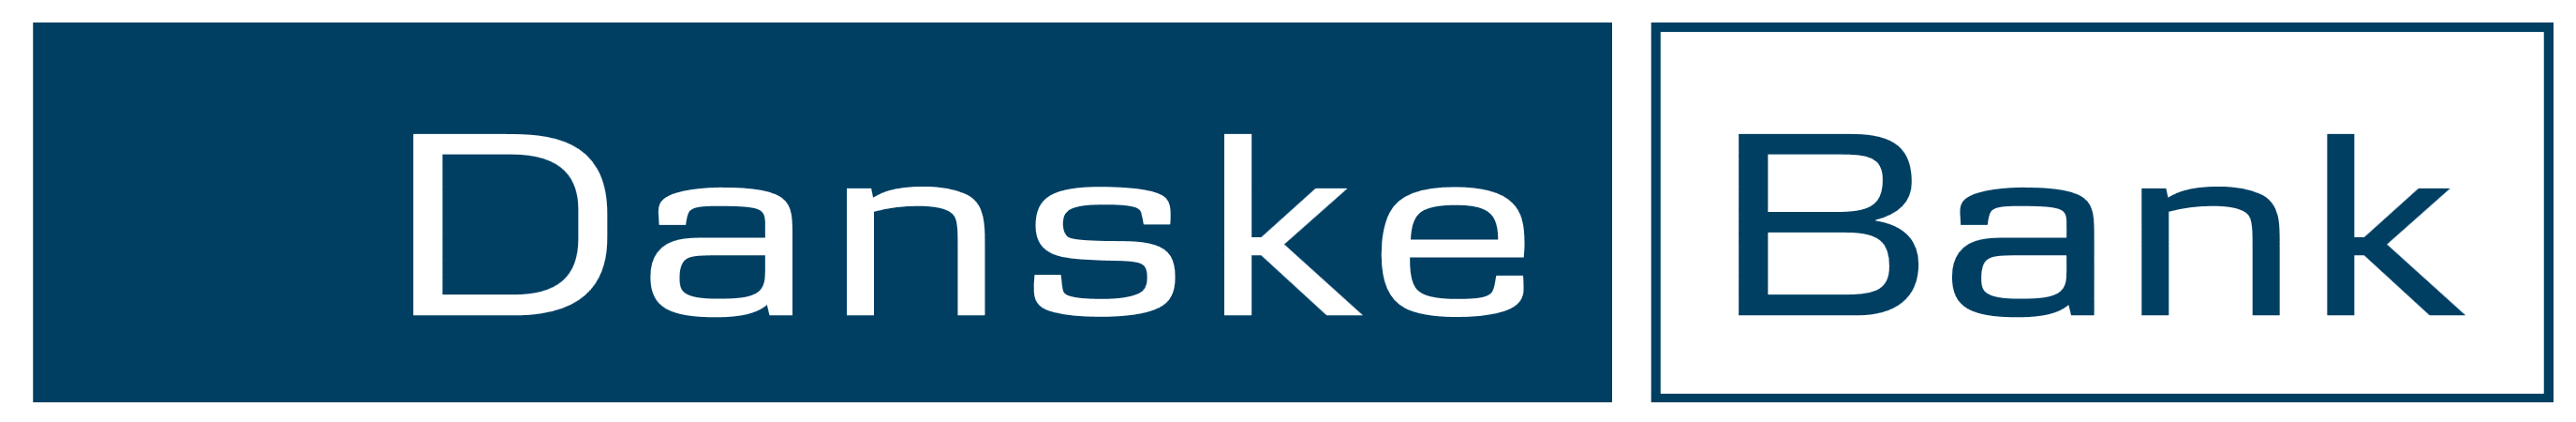 Danske Bank, logo